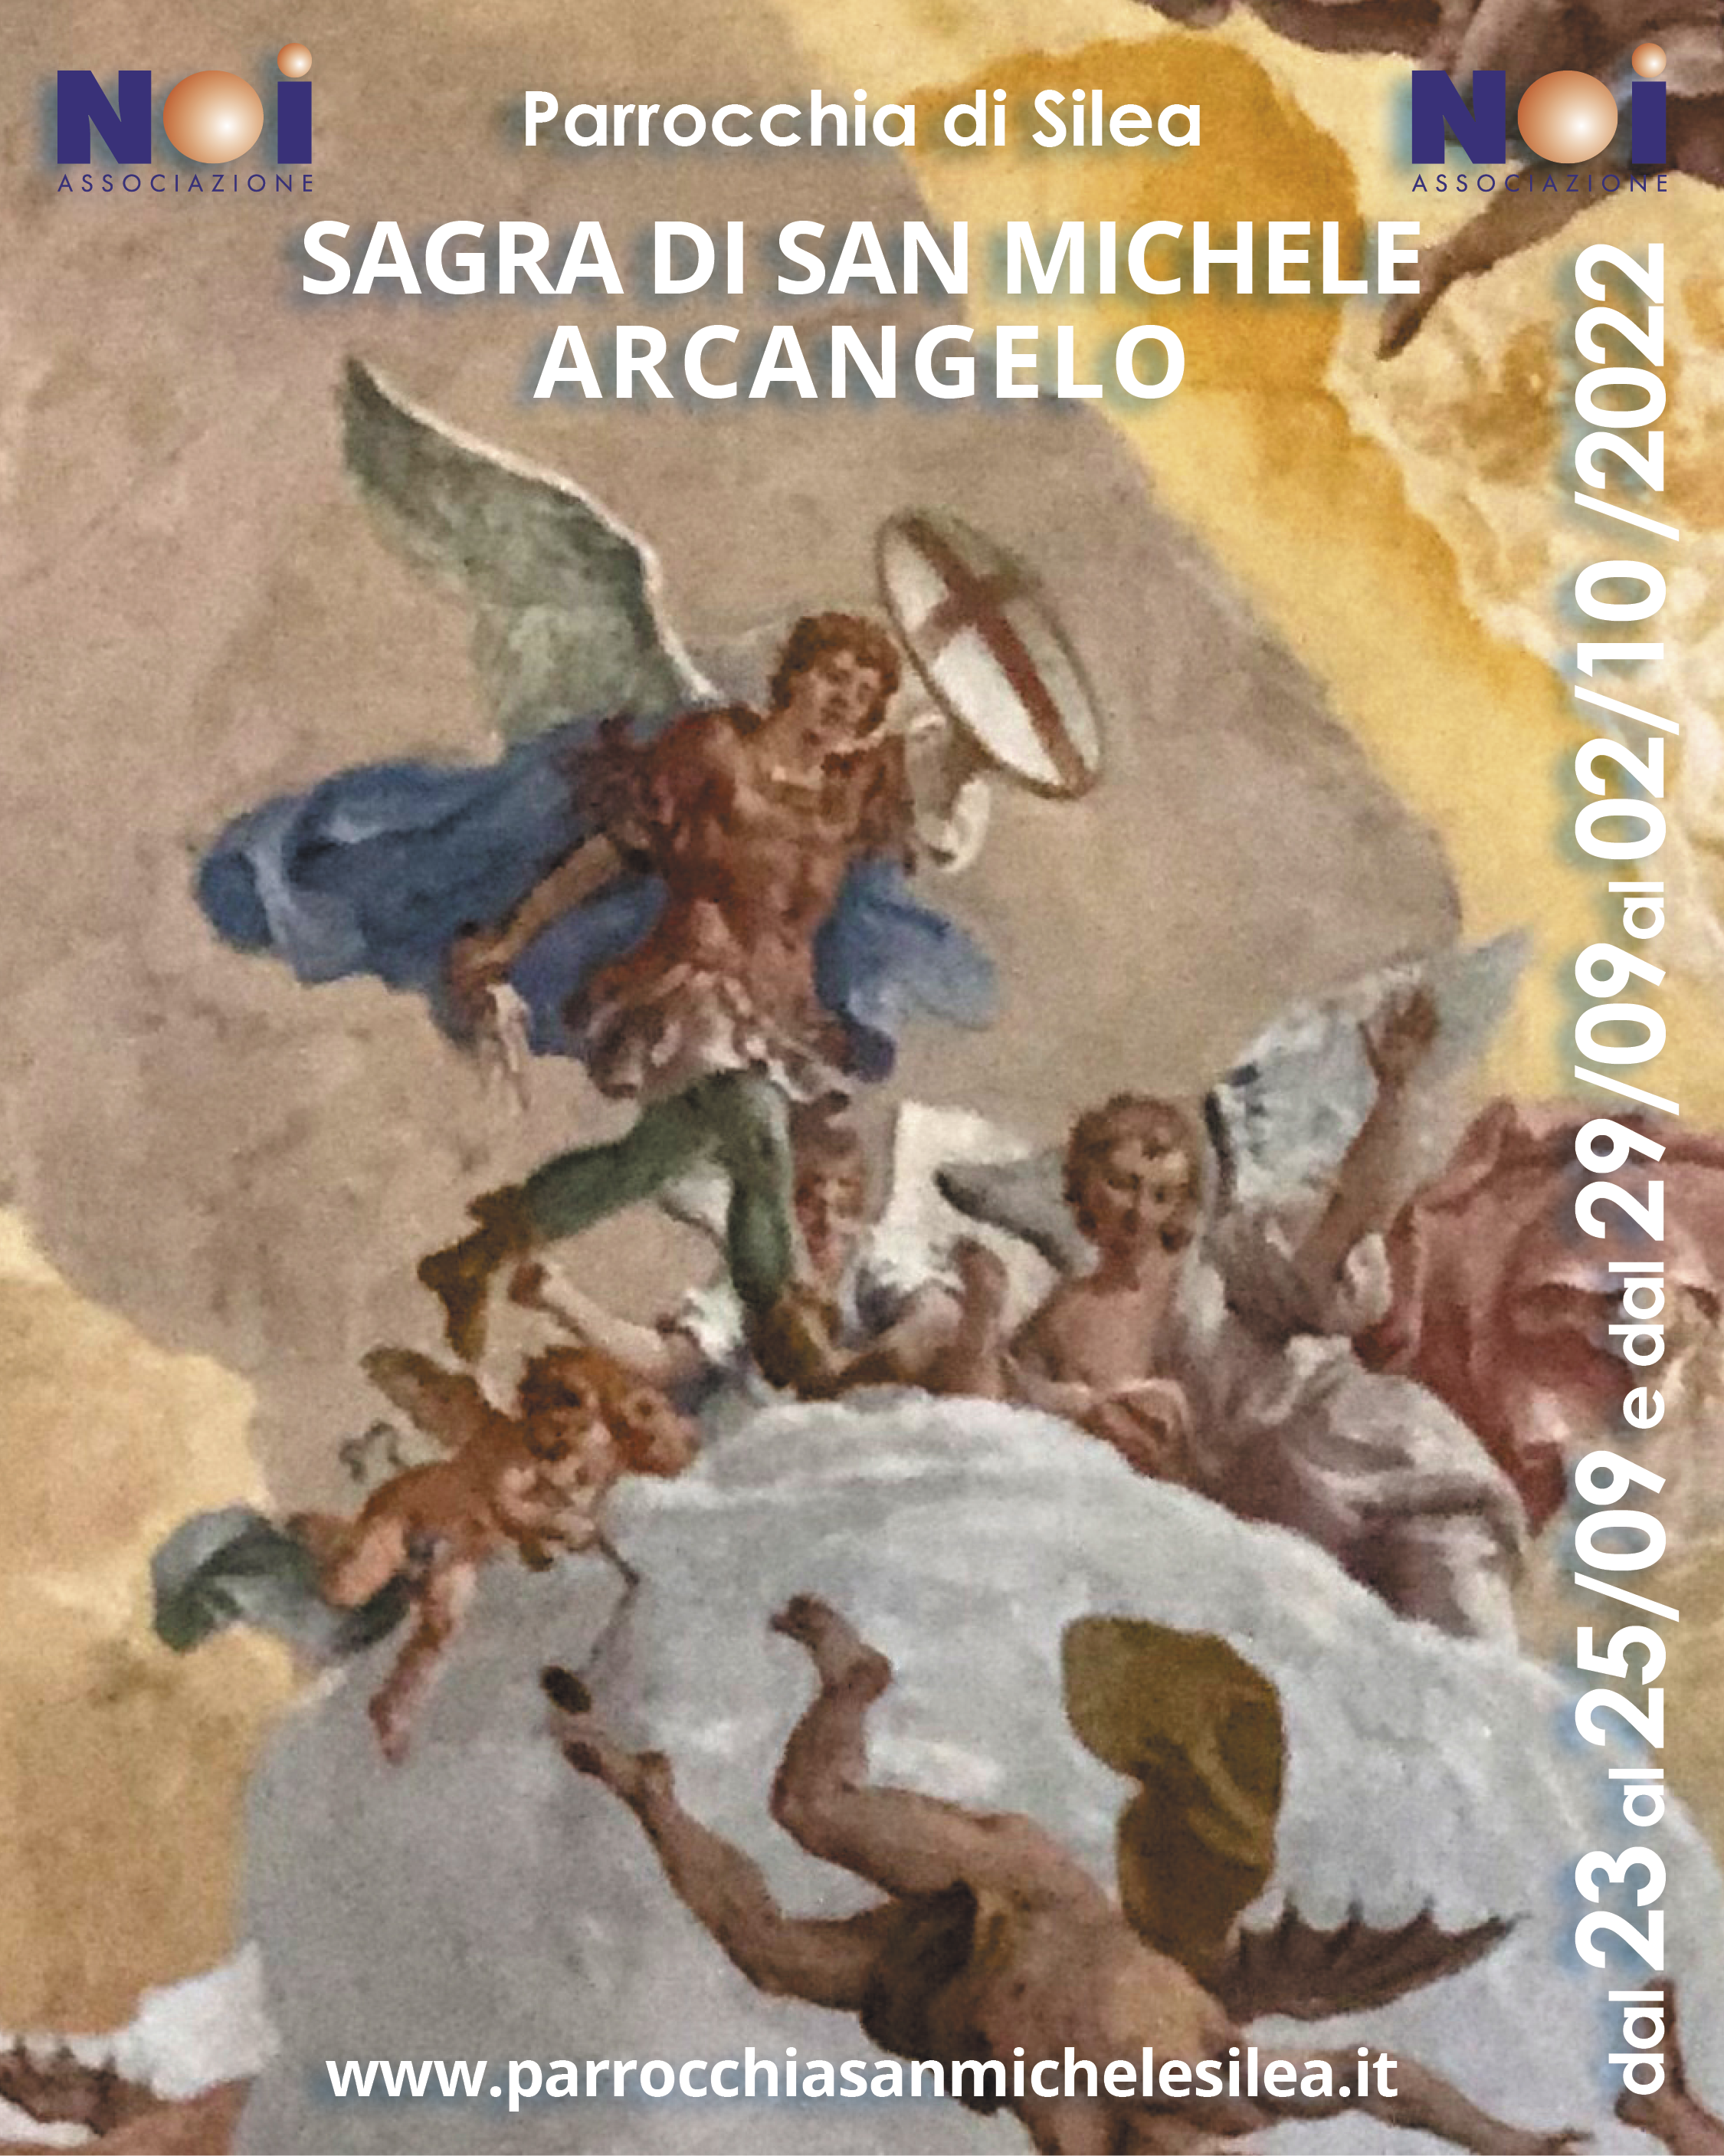 FESTA DI SAN MICHELE ARCANGELO – Pagina 2 – Istituto Romano San Michele